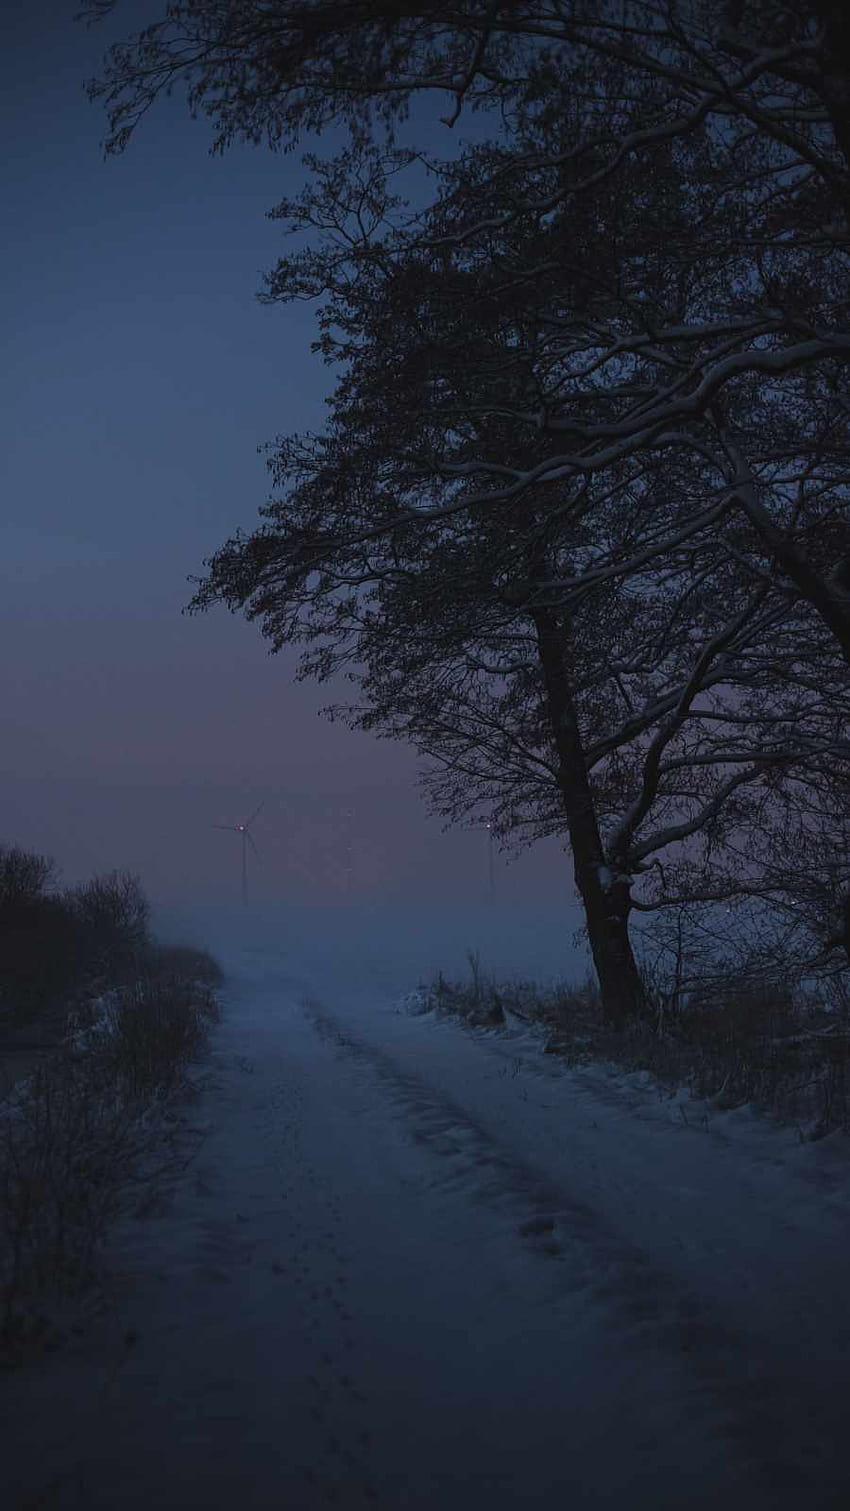 Winter Morning Mist IPhone, invierno oscuro iphone fondo de pantalla del teléfono